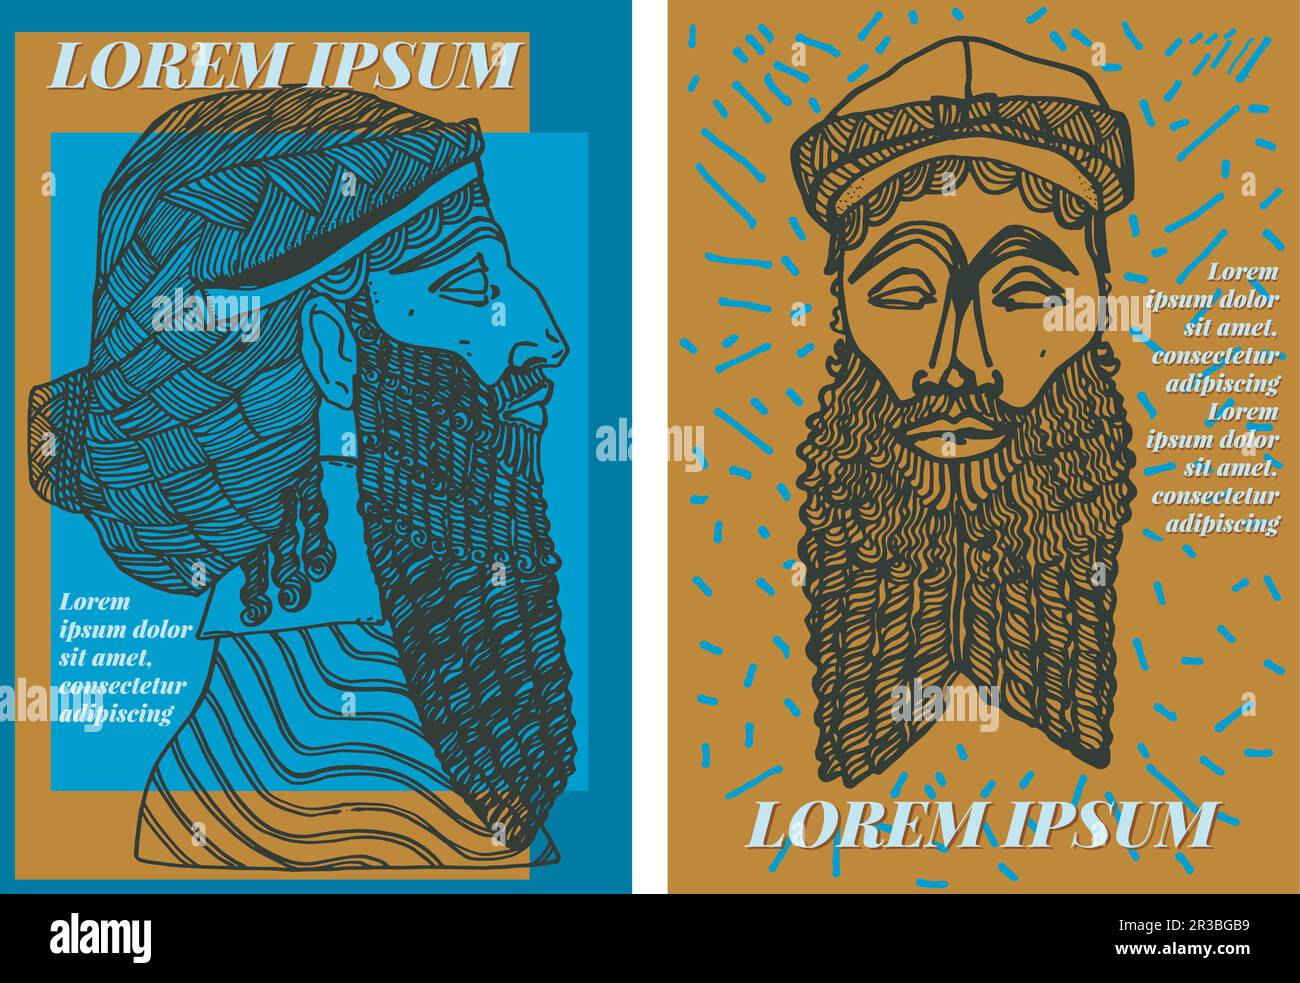 Grafikressourcen zweier von Mesopotamien inspirierter Designs. Echte Illustrationen klassischer Linienbüsten für T-Shirt-Muster, Poster, Aufkleber Stock Vektor